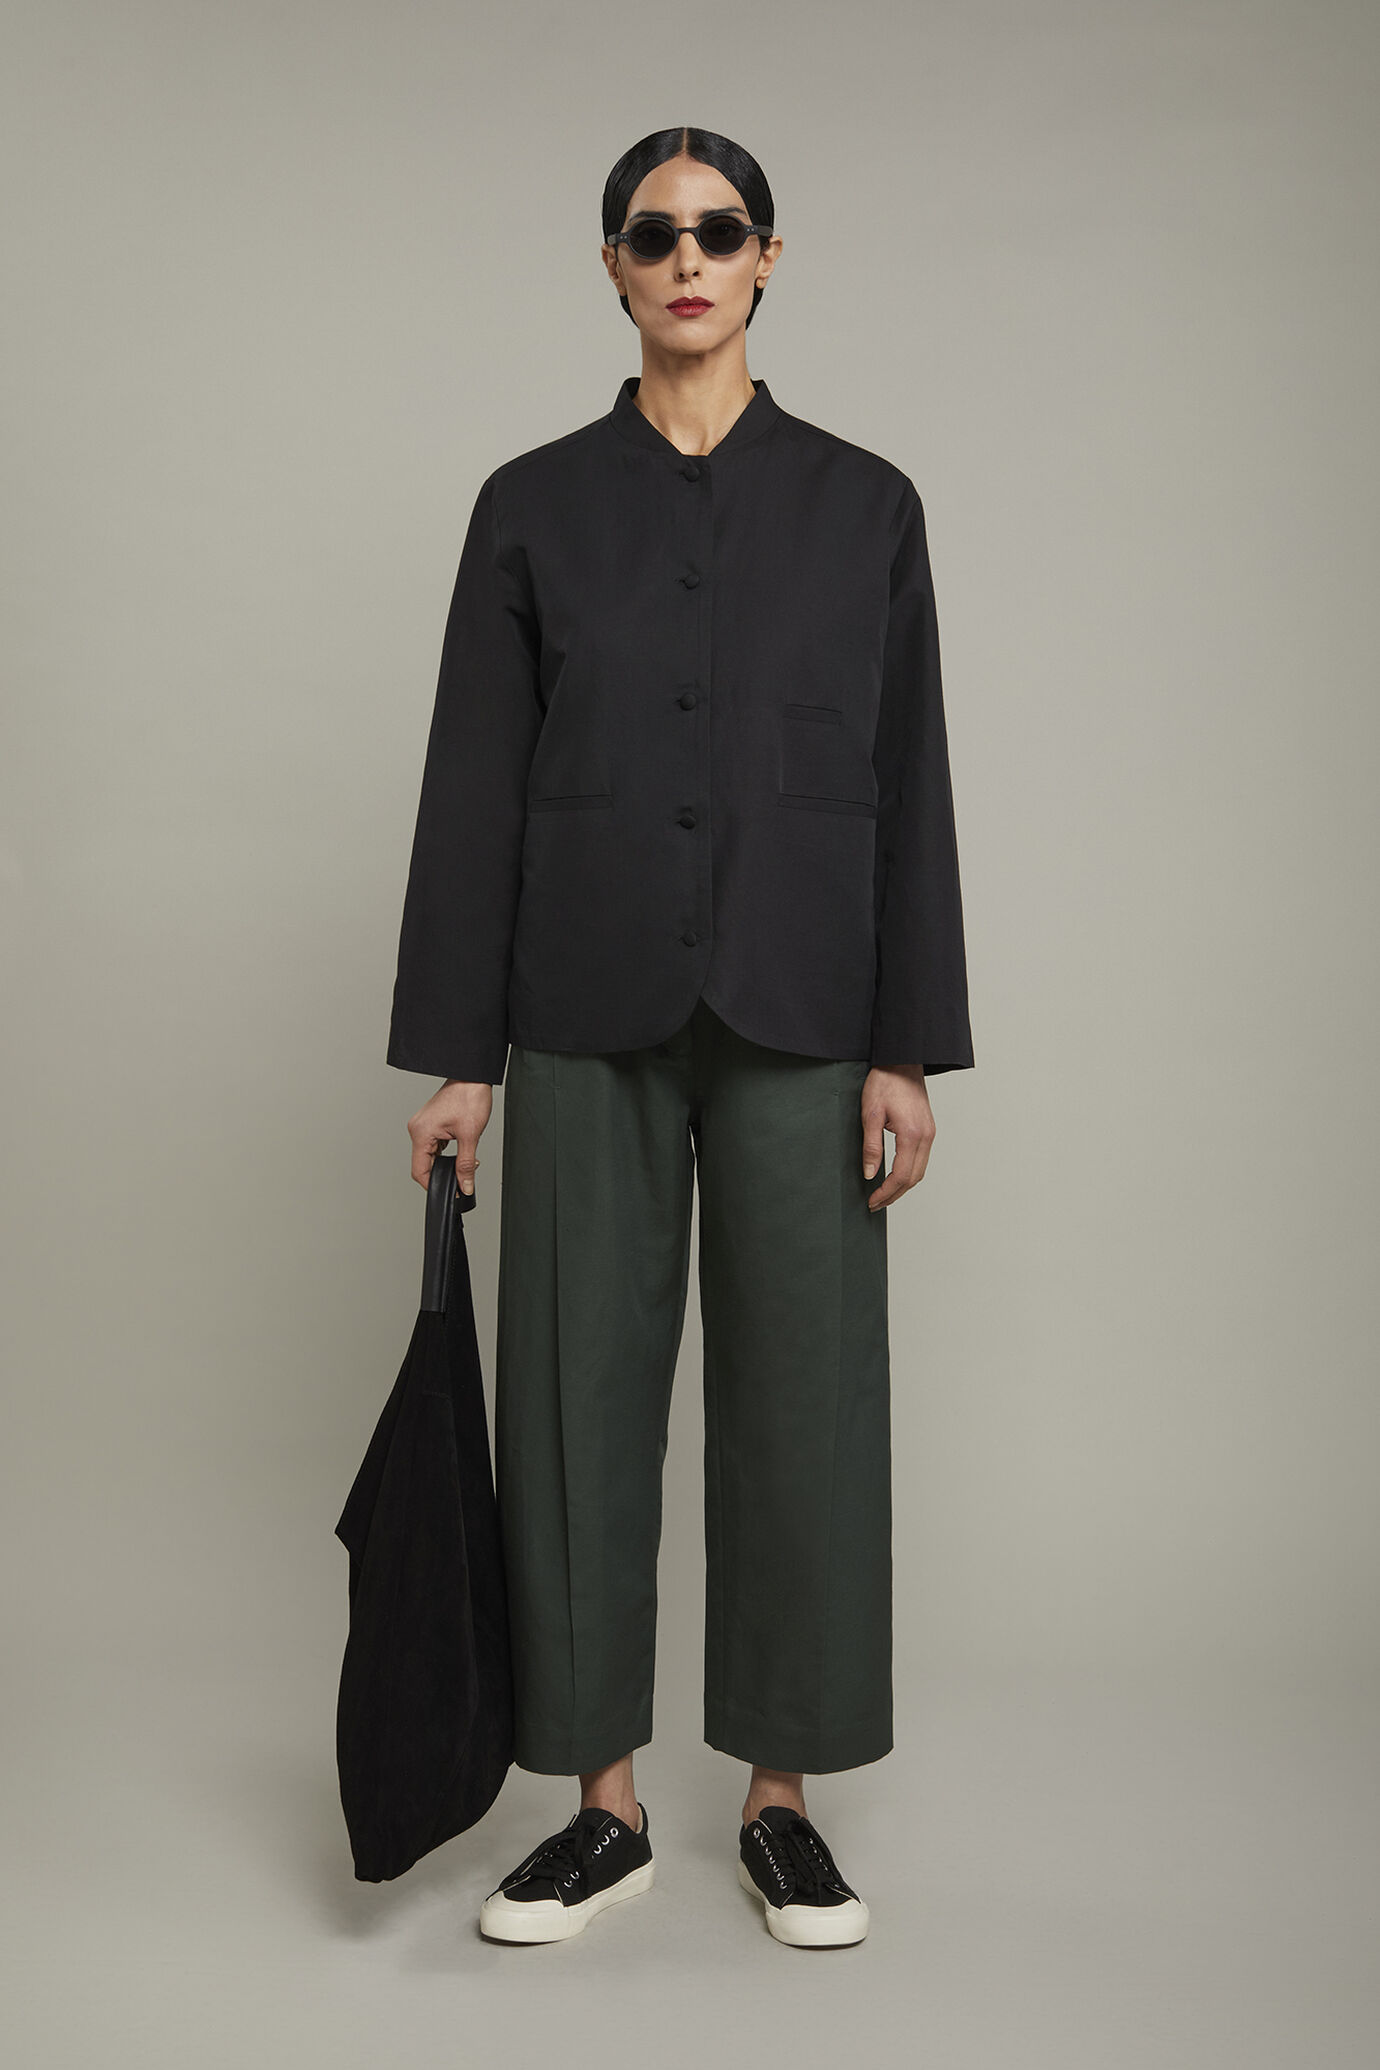 Women’s blazer with Korean collar linen and cotton blend regular fit